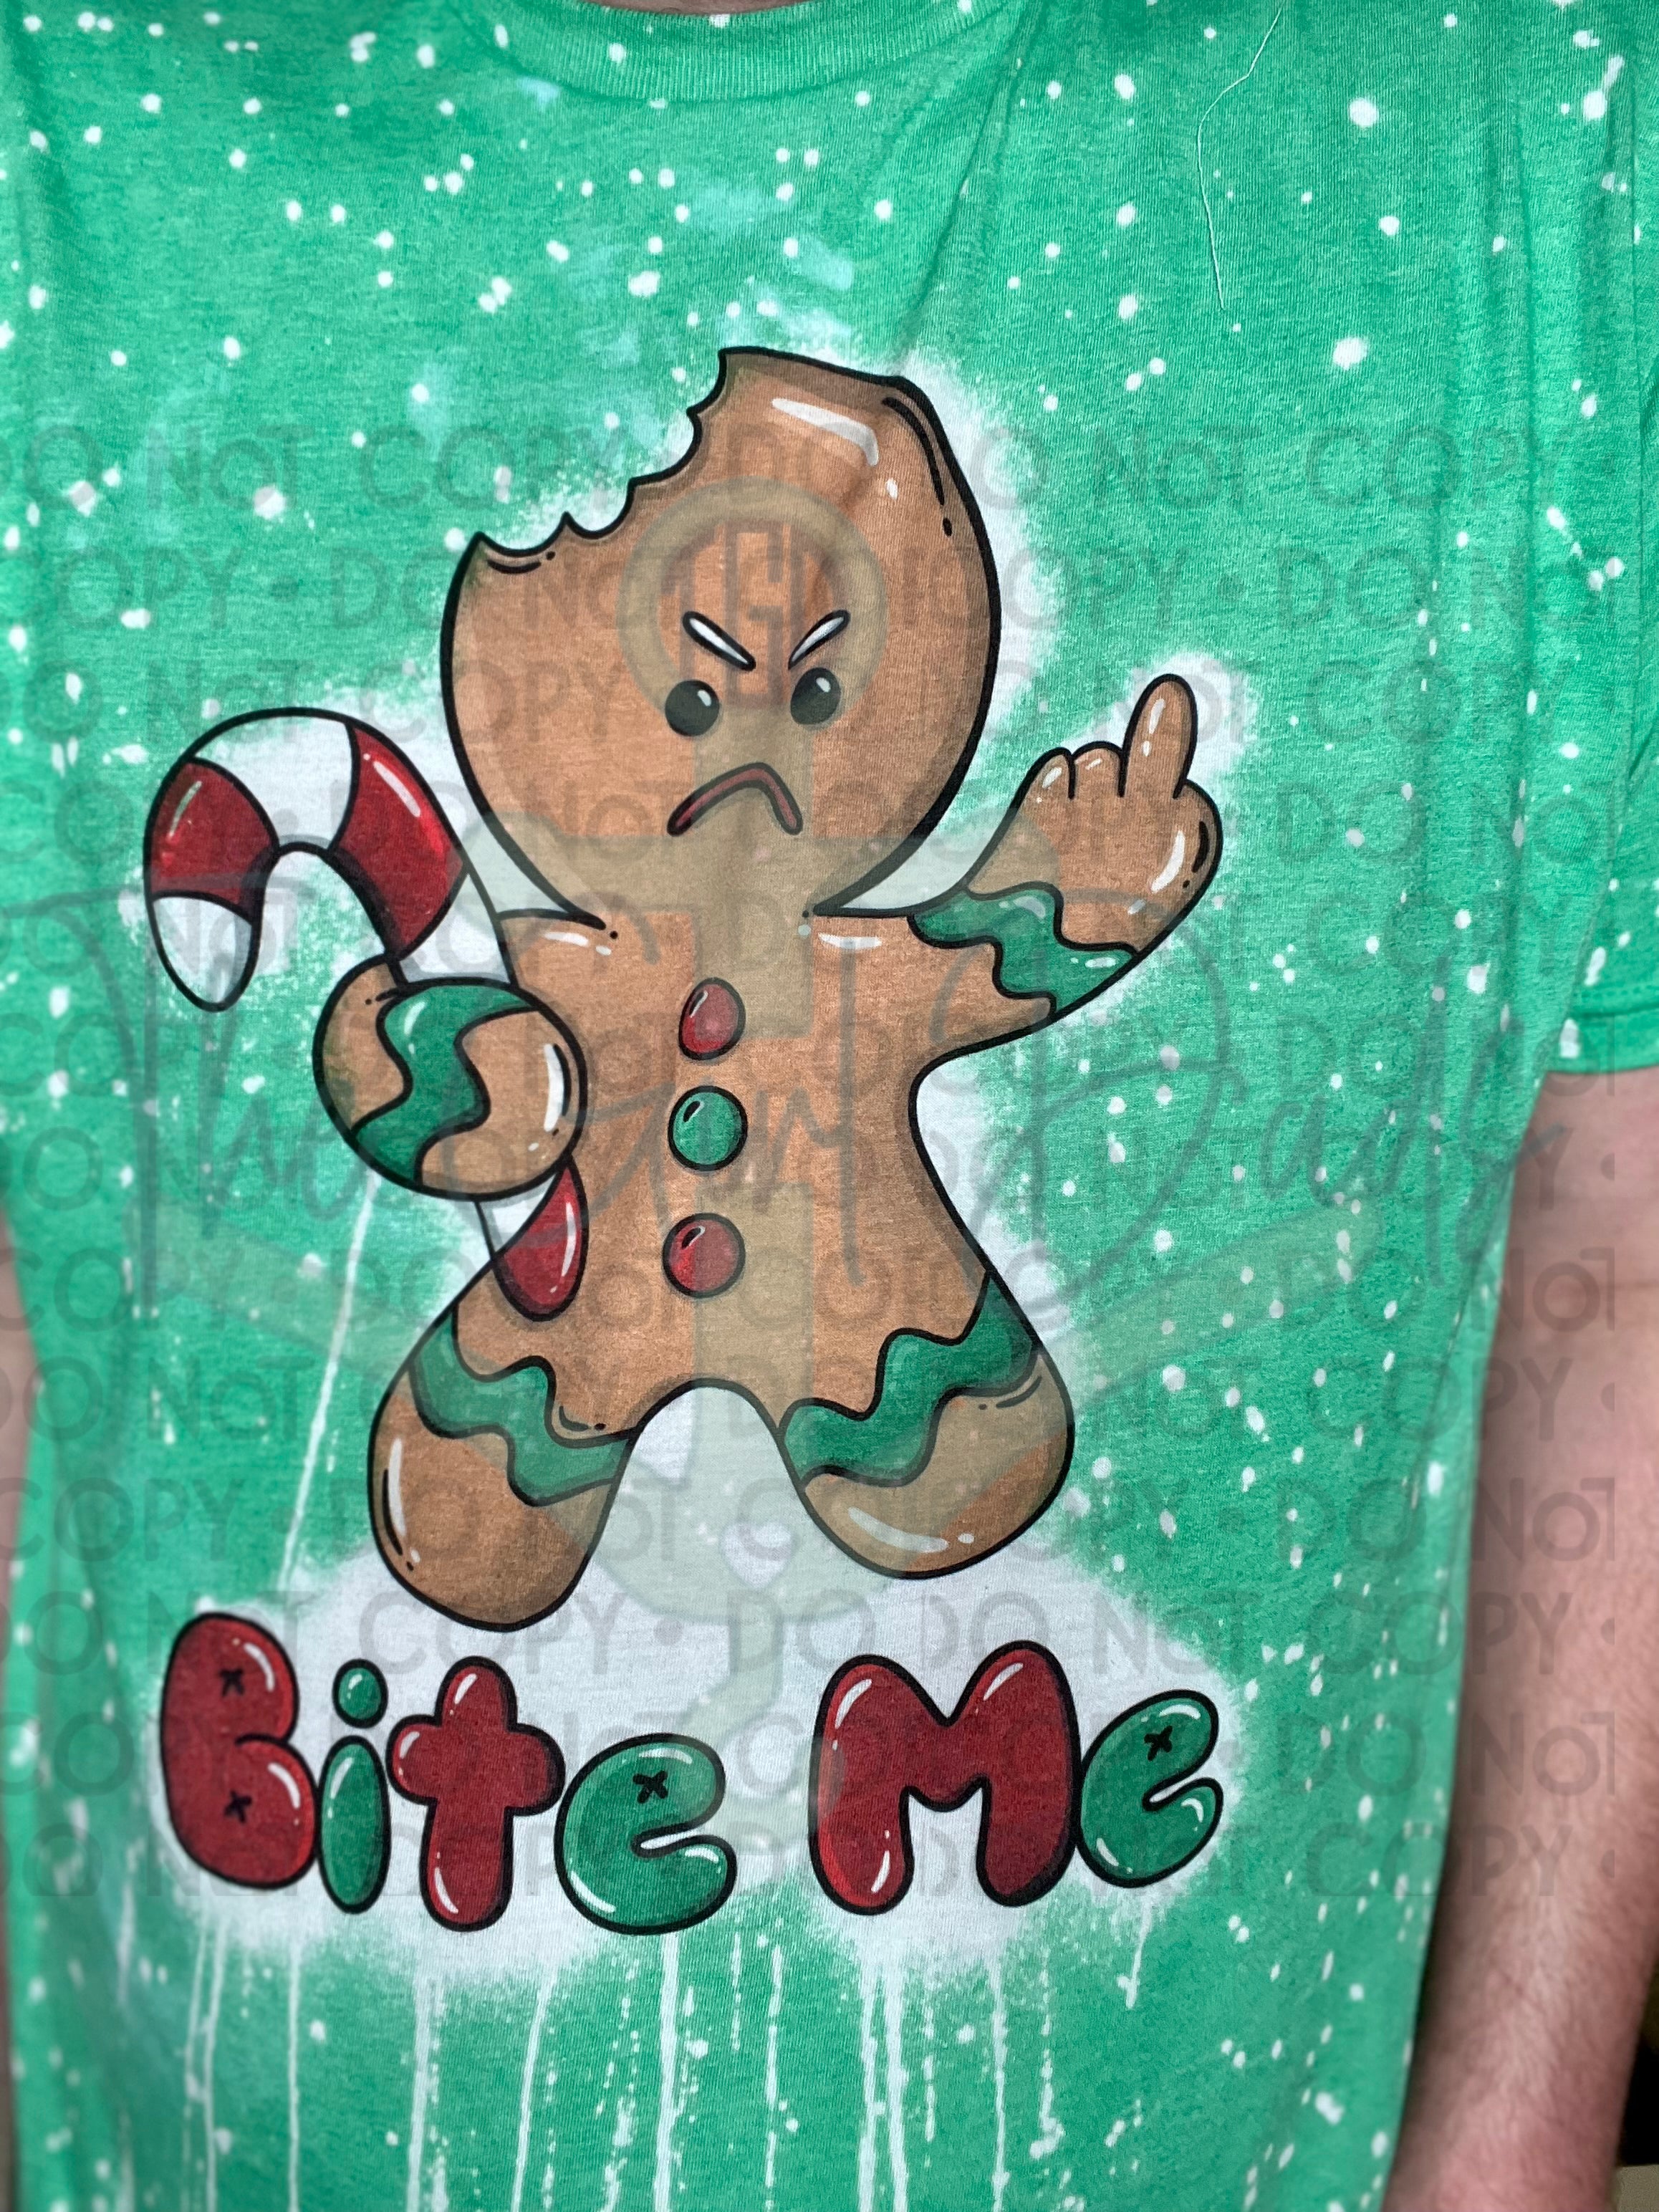 Bite ME Gingerbread Man Top Design